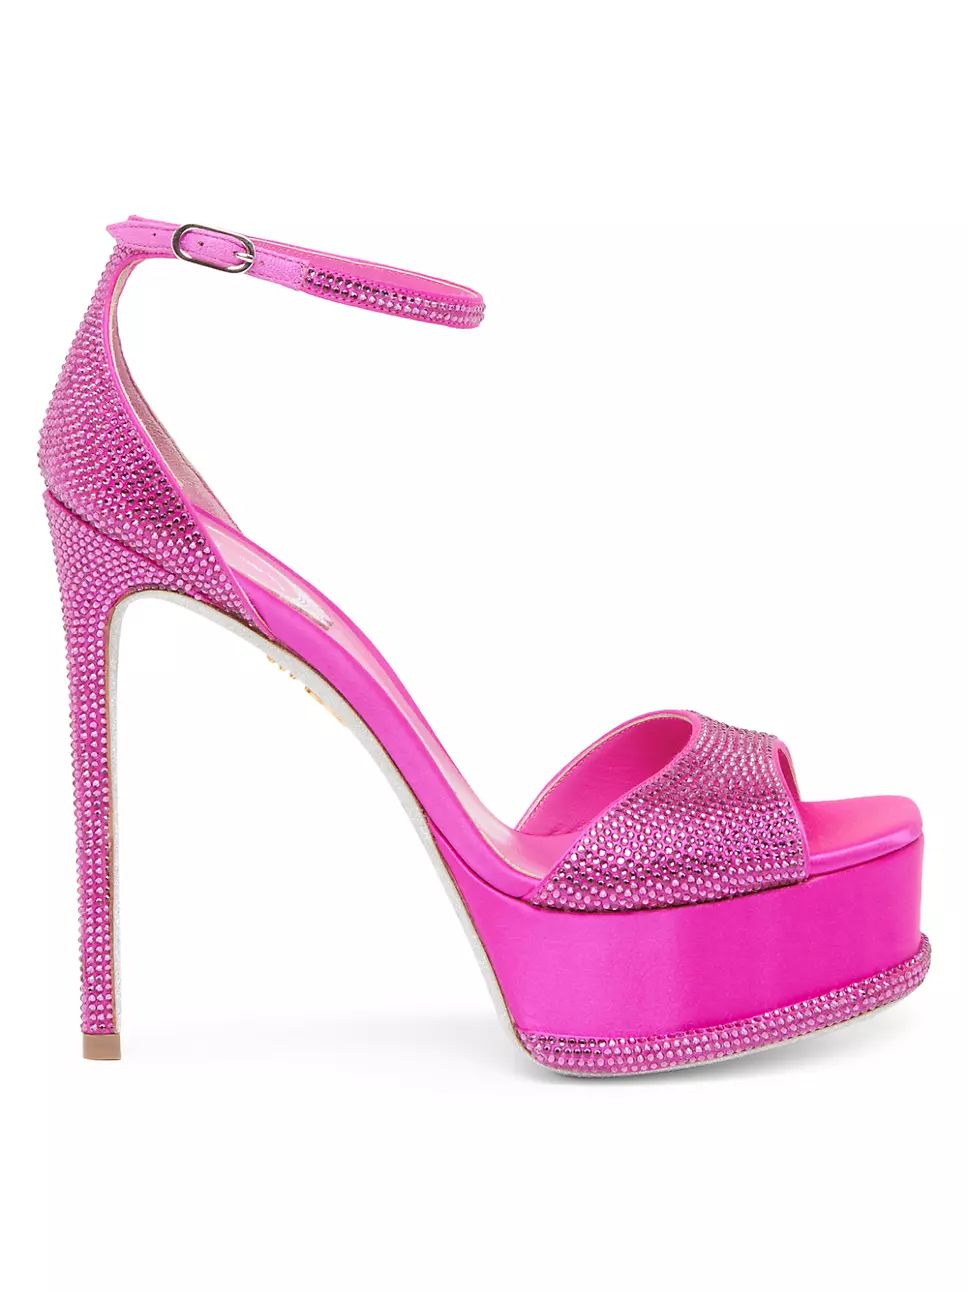 Satin Bead-Embellished Platform Sandals | Saks Fifth Avenue